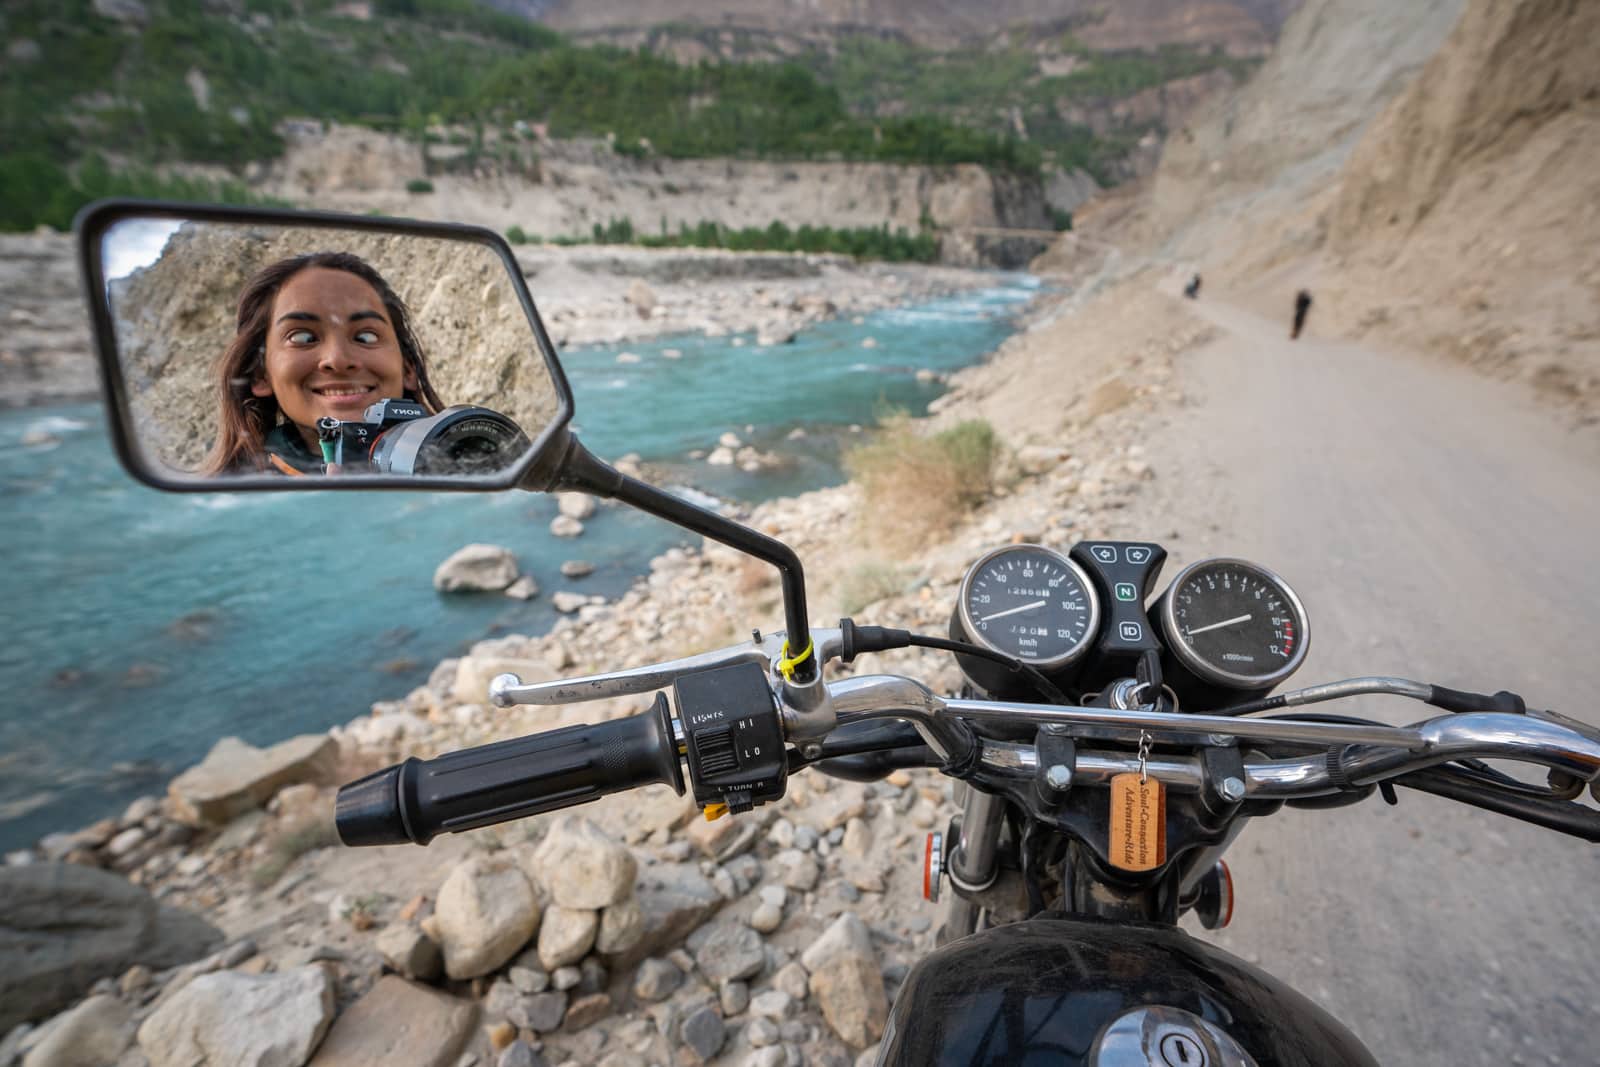 Alex motorbike selfie in Pakistan